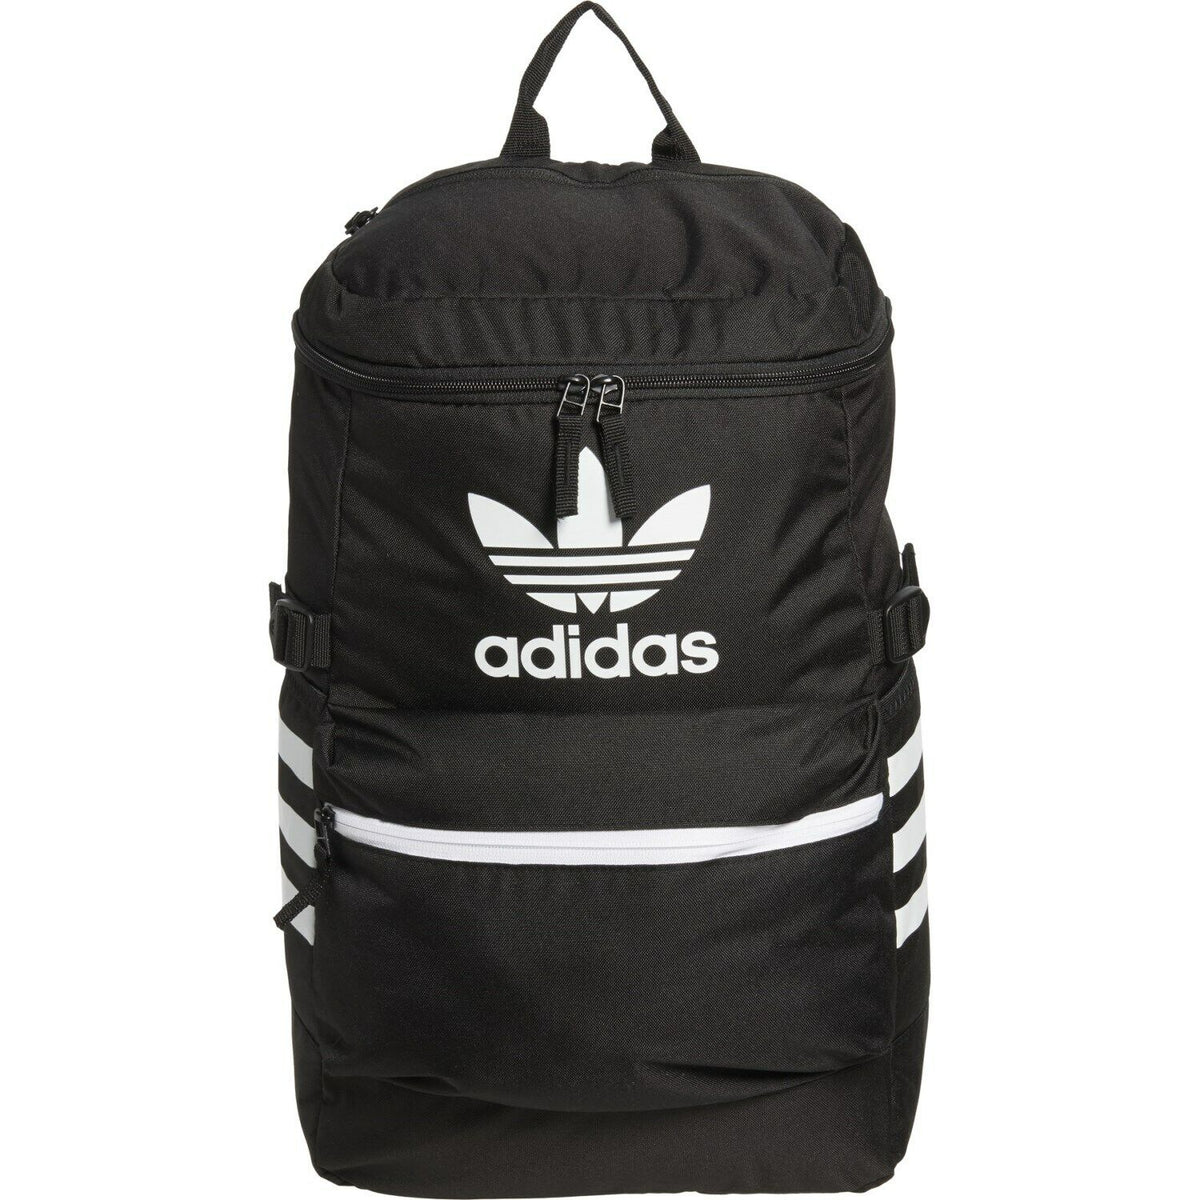 adidas Performance Classic Backpack Travel bag 385213, UhfmrShops